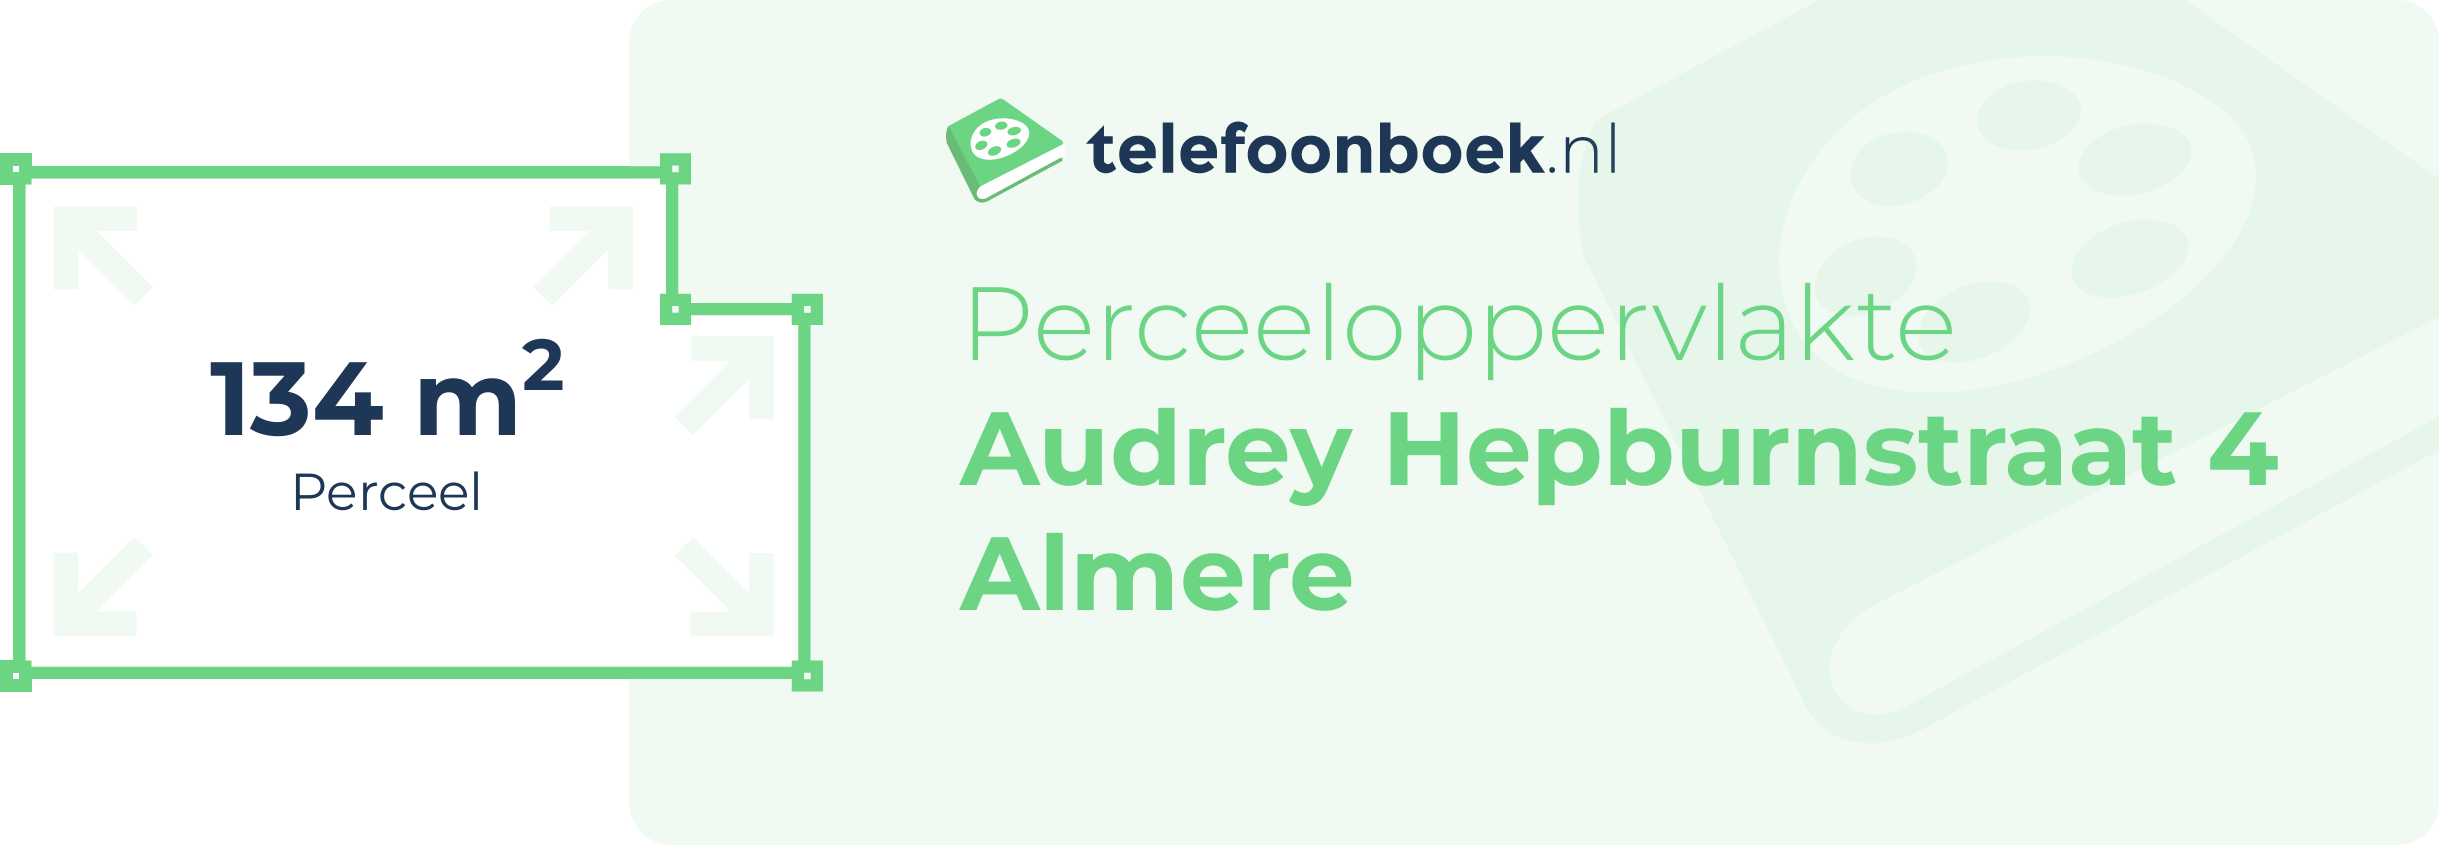 Perceeloppervlakte Audrey Hepburnstraat 4 Almere